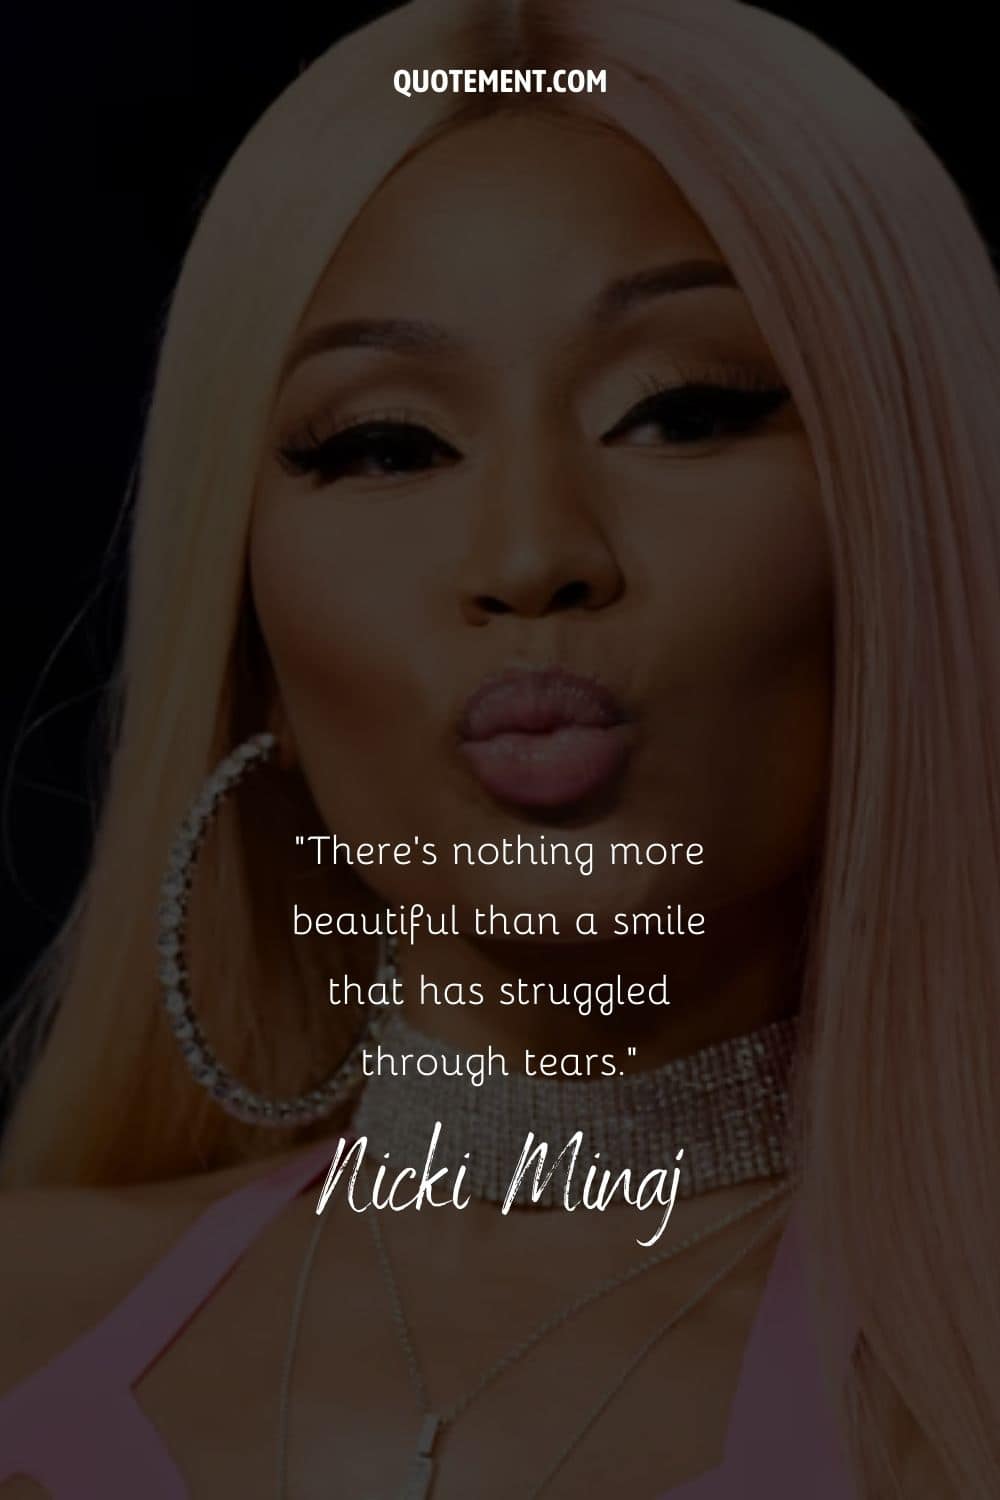 Cita de Nicki Minaj y su retrato al fondo